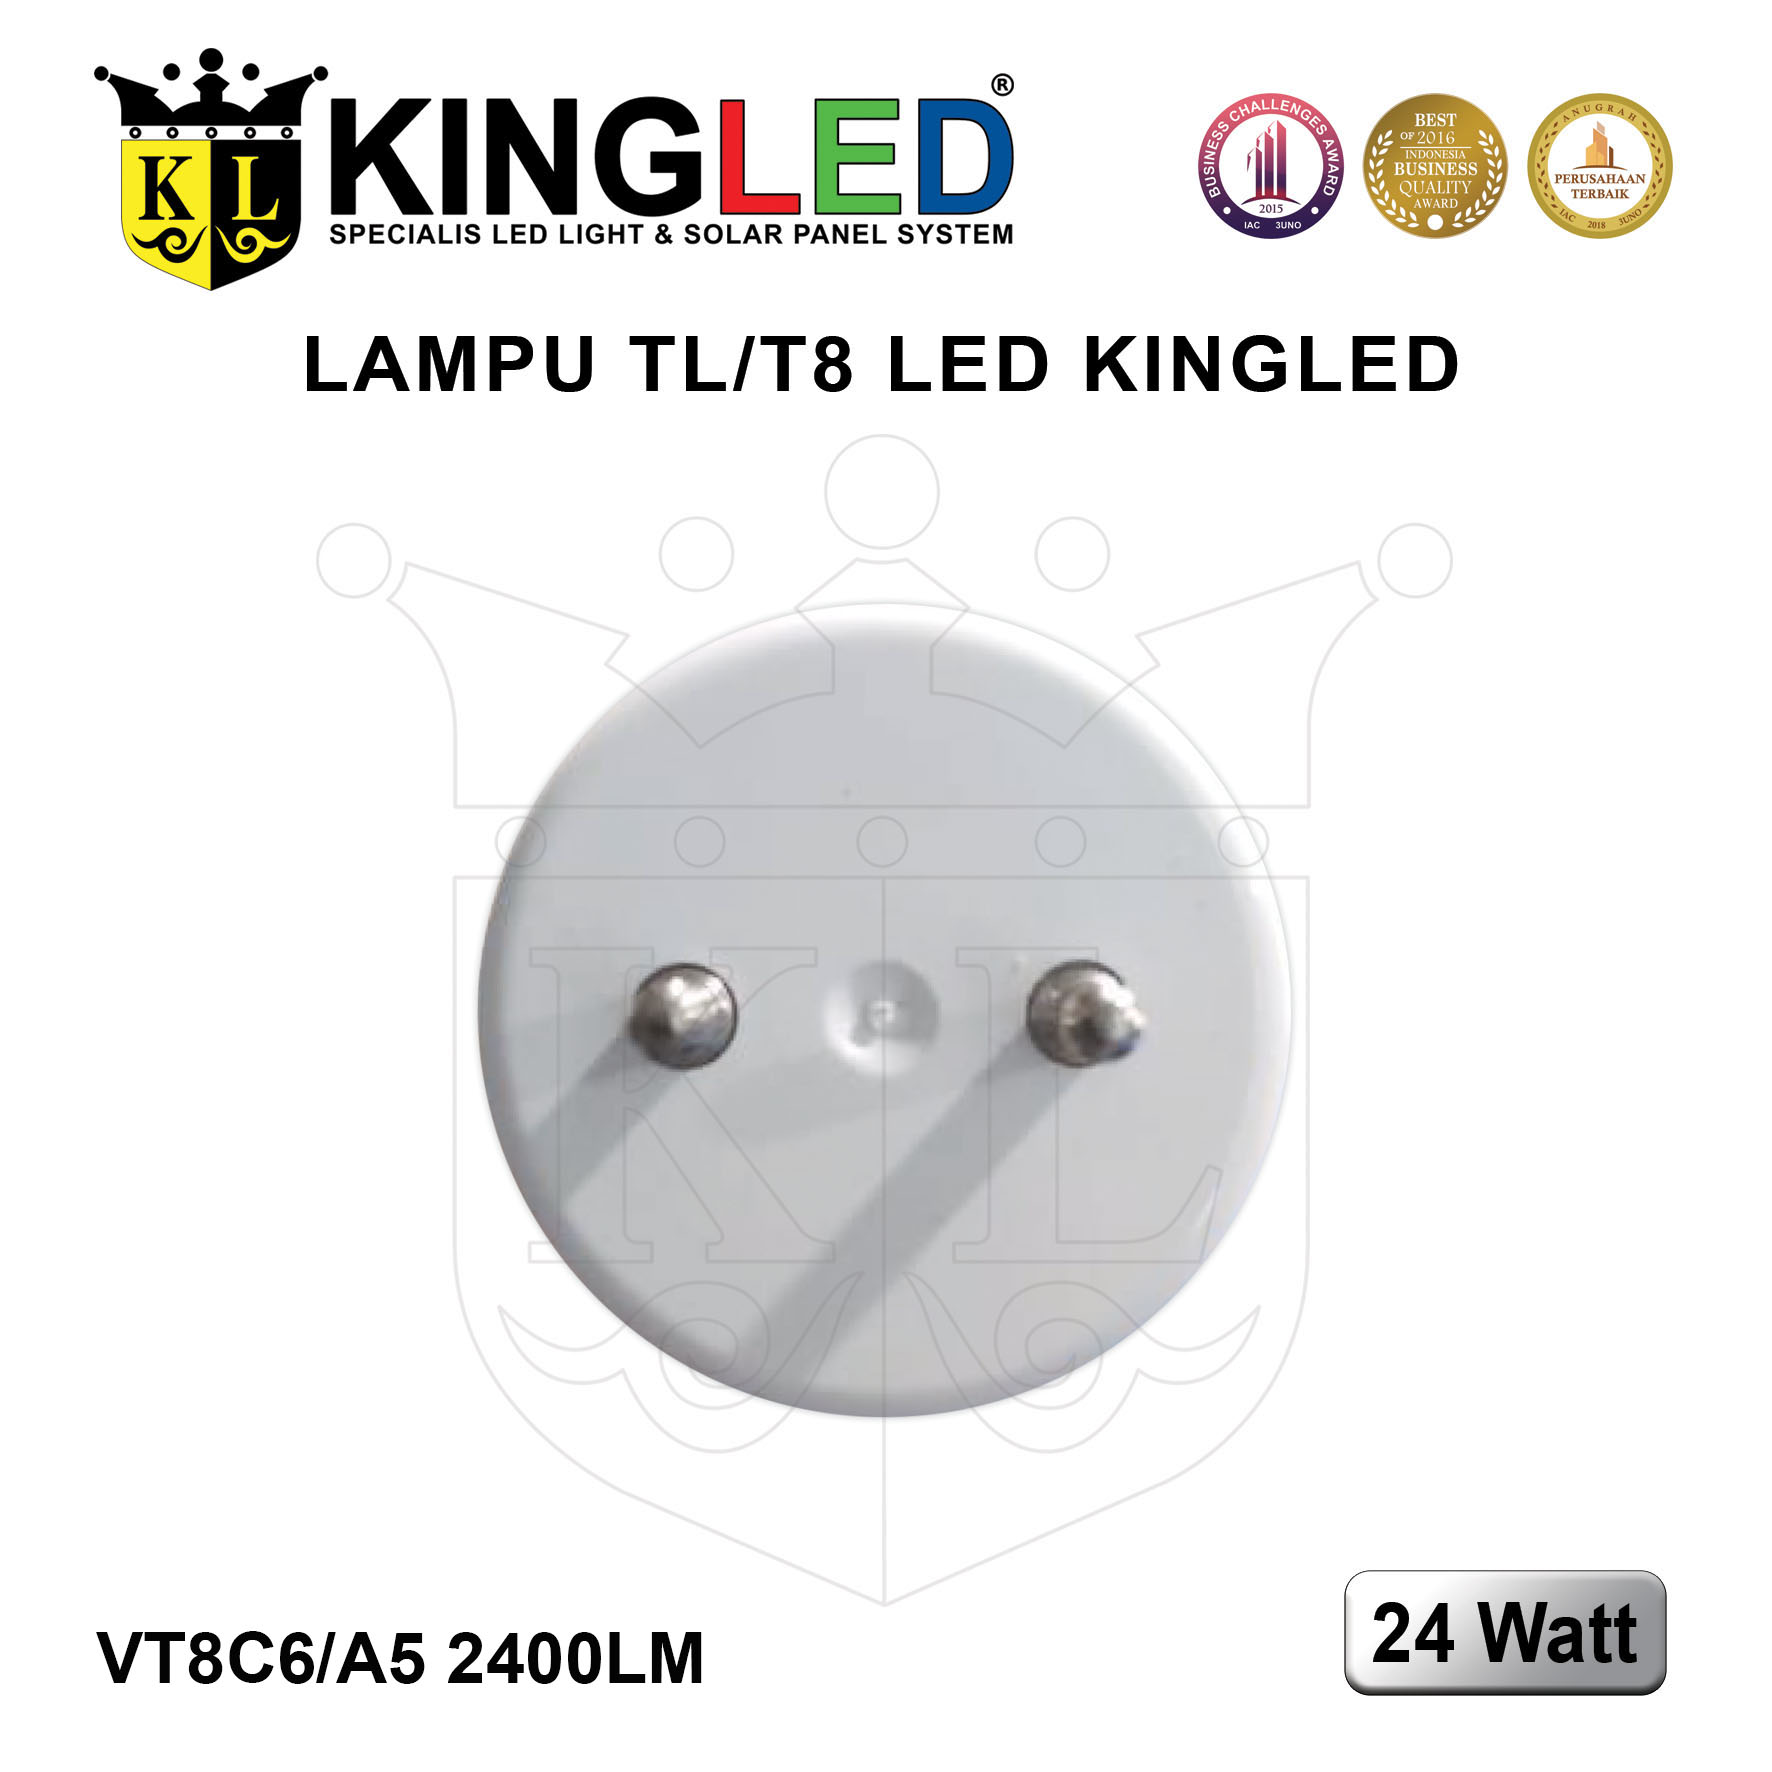 Lampu TL T8 LED 24 Watt / Tube T8 LED 24 Watt